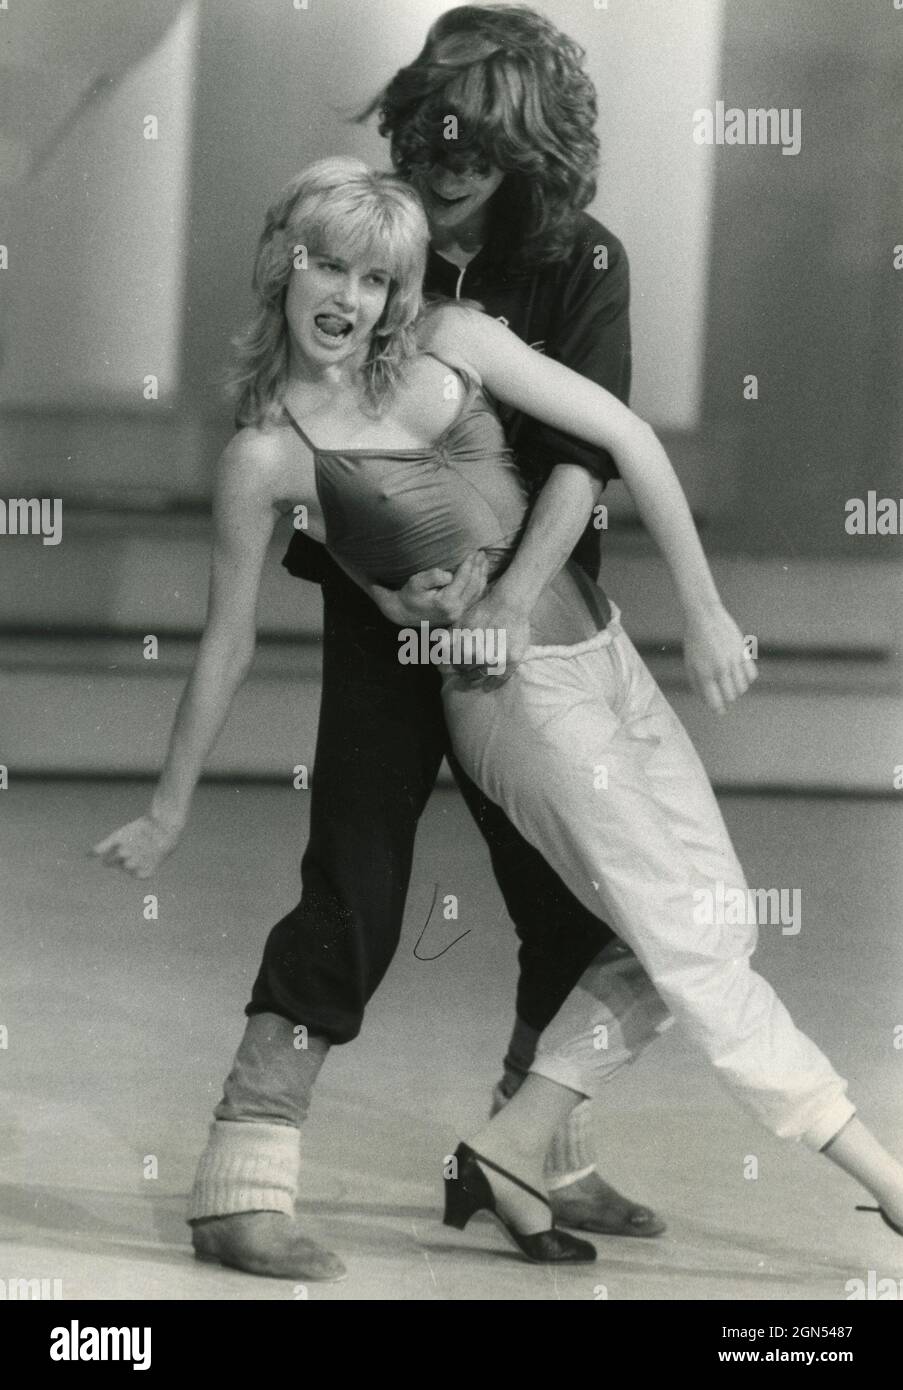 La showgirl italiana e la ballerina Lorella Cuccarini al programma televisivo Fantastico 6, 1980 Foto Stock